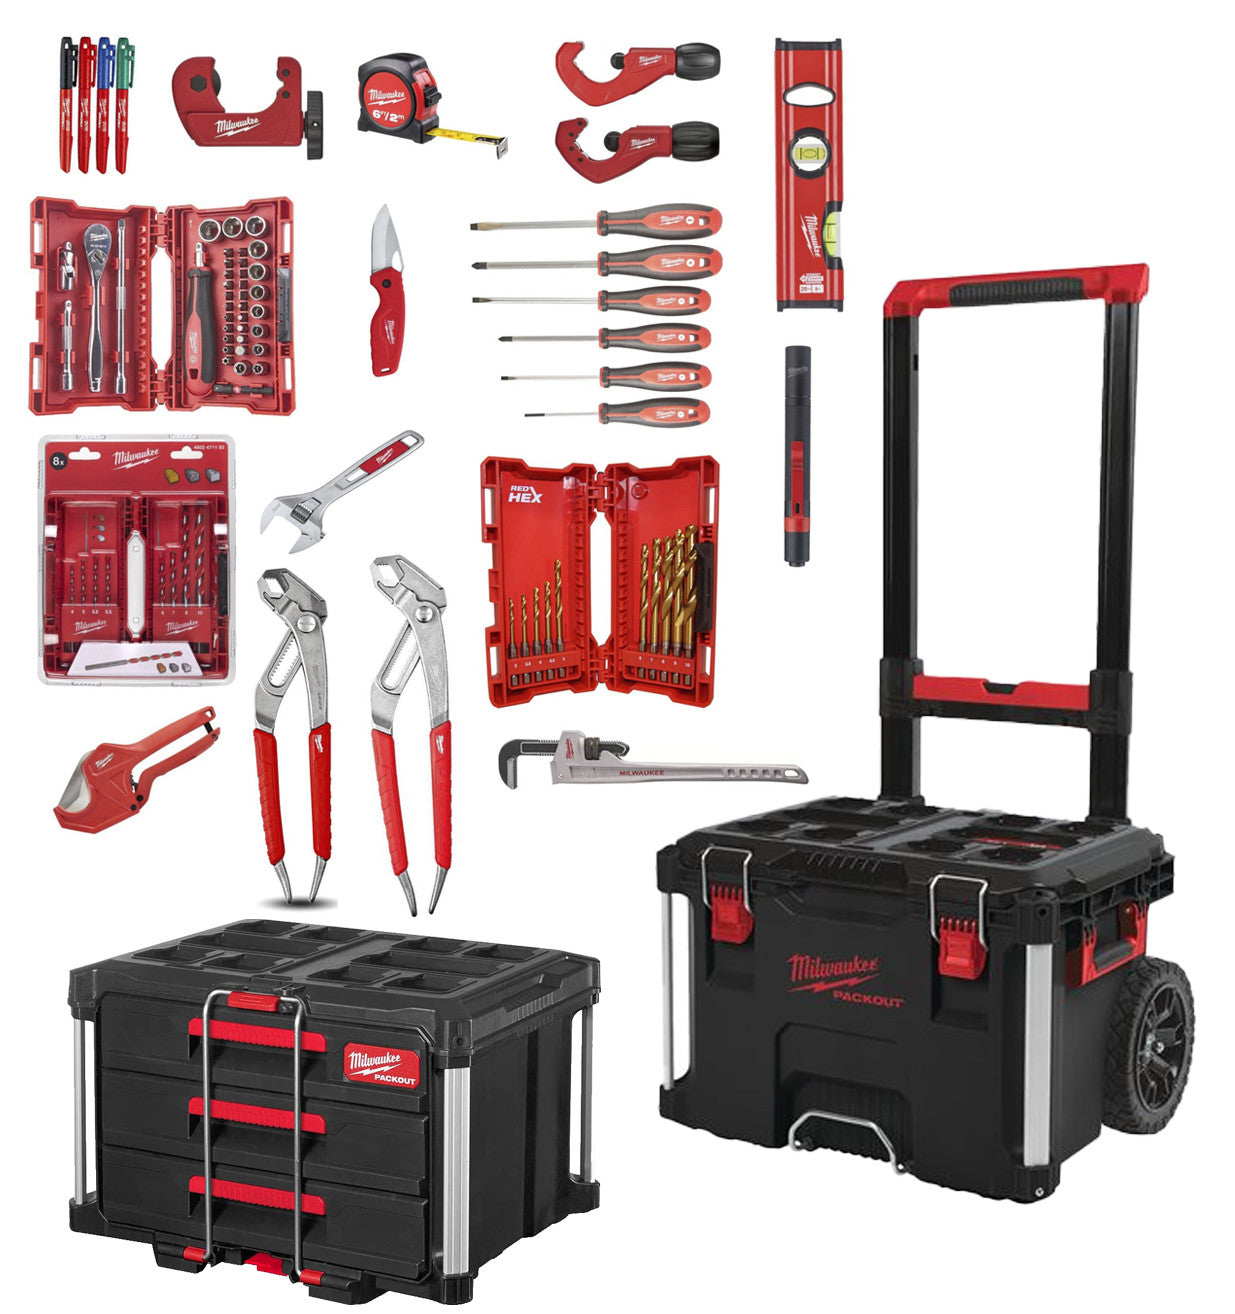 Packout Installer Kit mit 17 Milwaukee-Werkzeugen